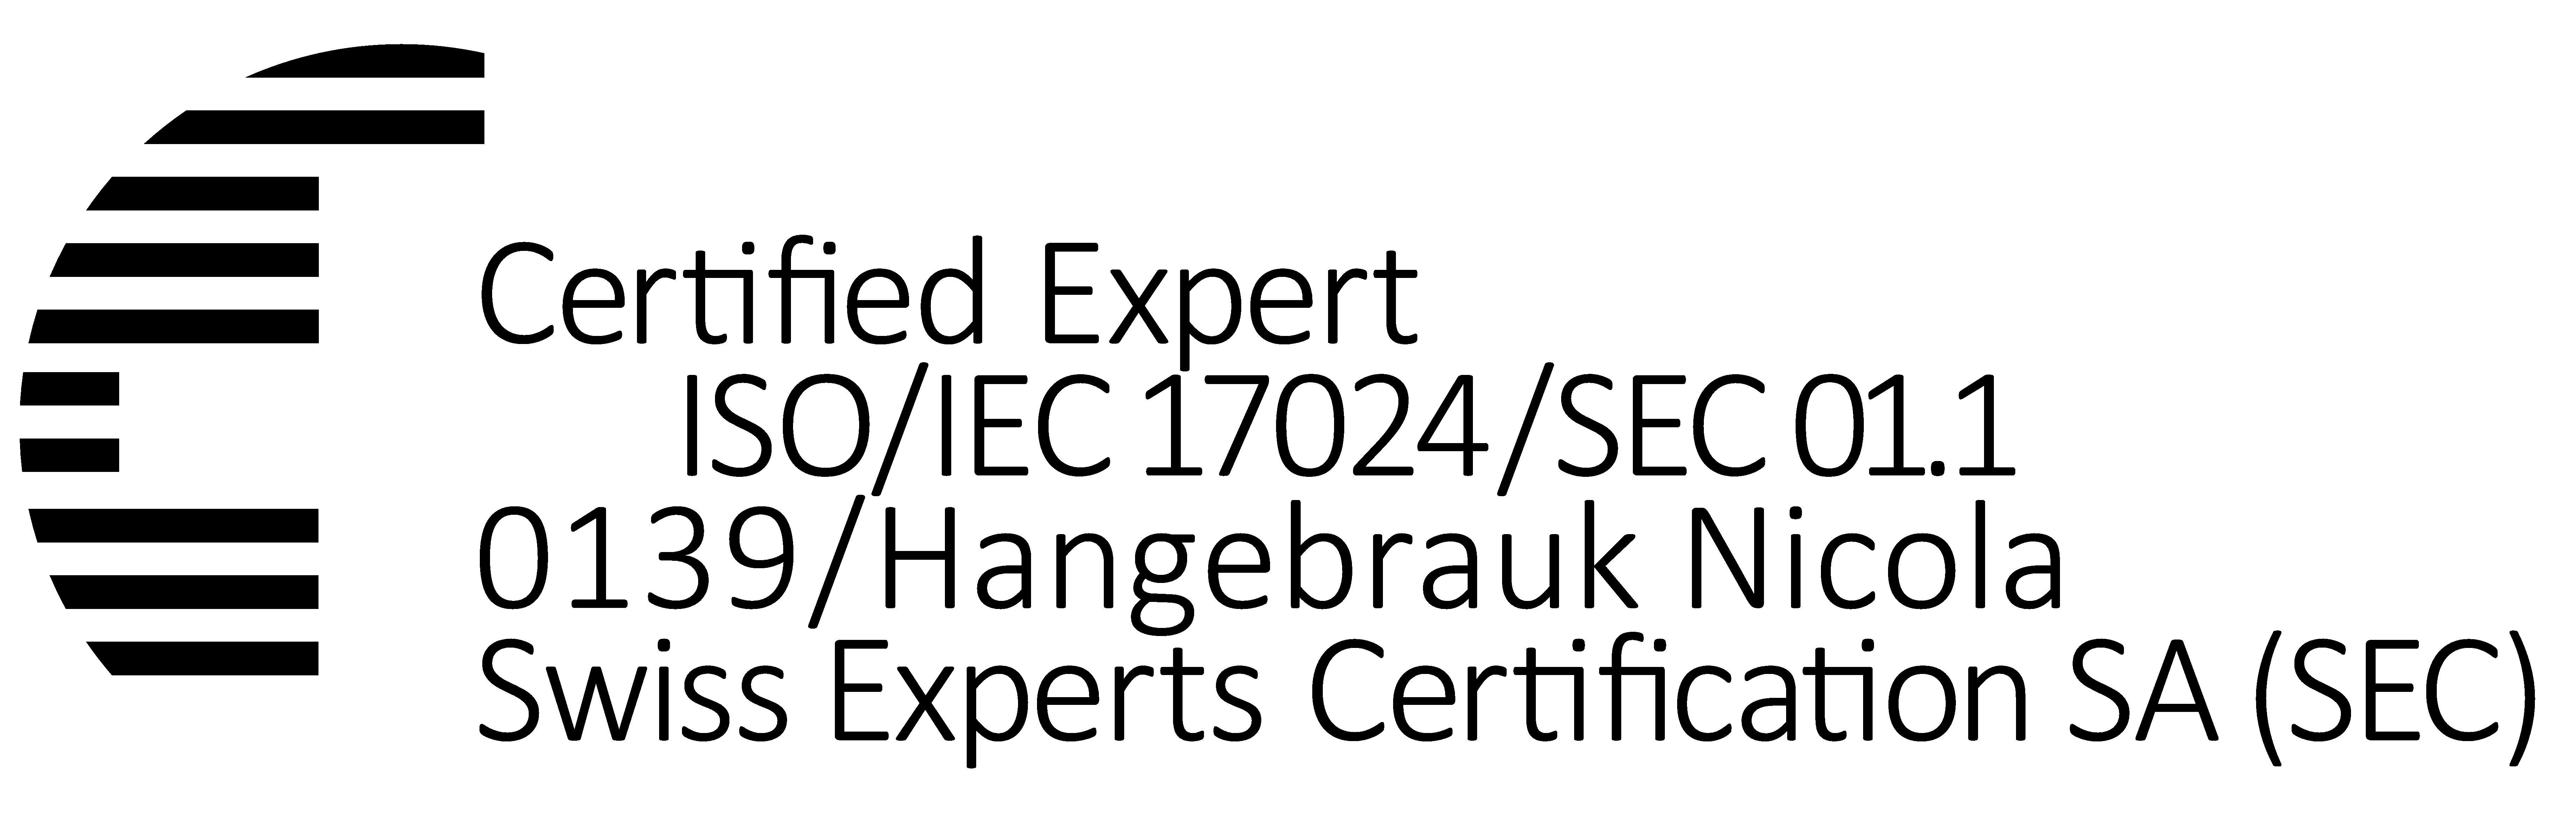 Swiss Experts Certification CA Nicola Hangebrauk